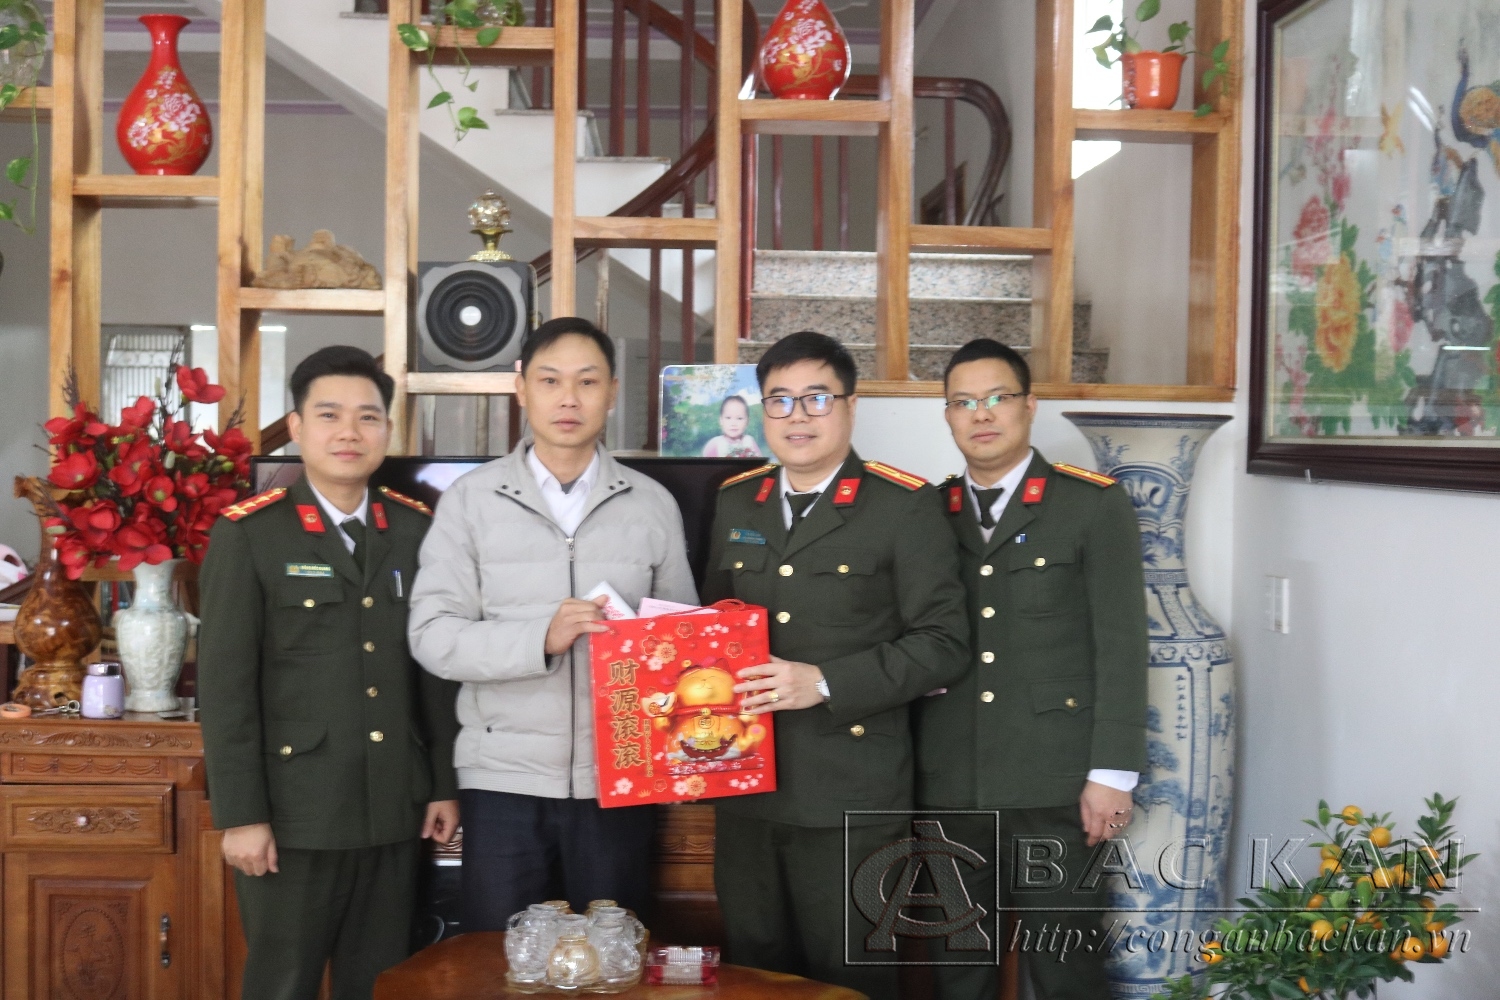 Lãnh đạo Phòng Tổ chức cán bộ trao quà cho thương binh Triệu Đức Sơn